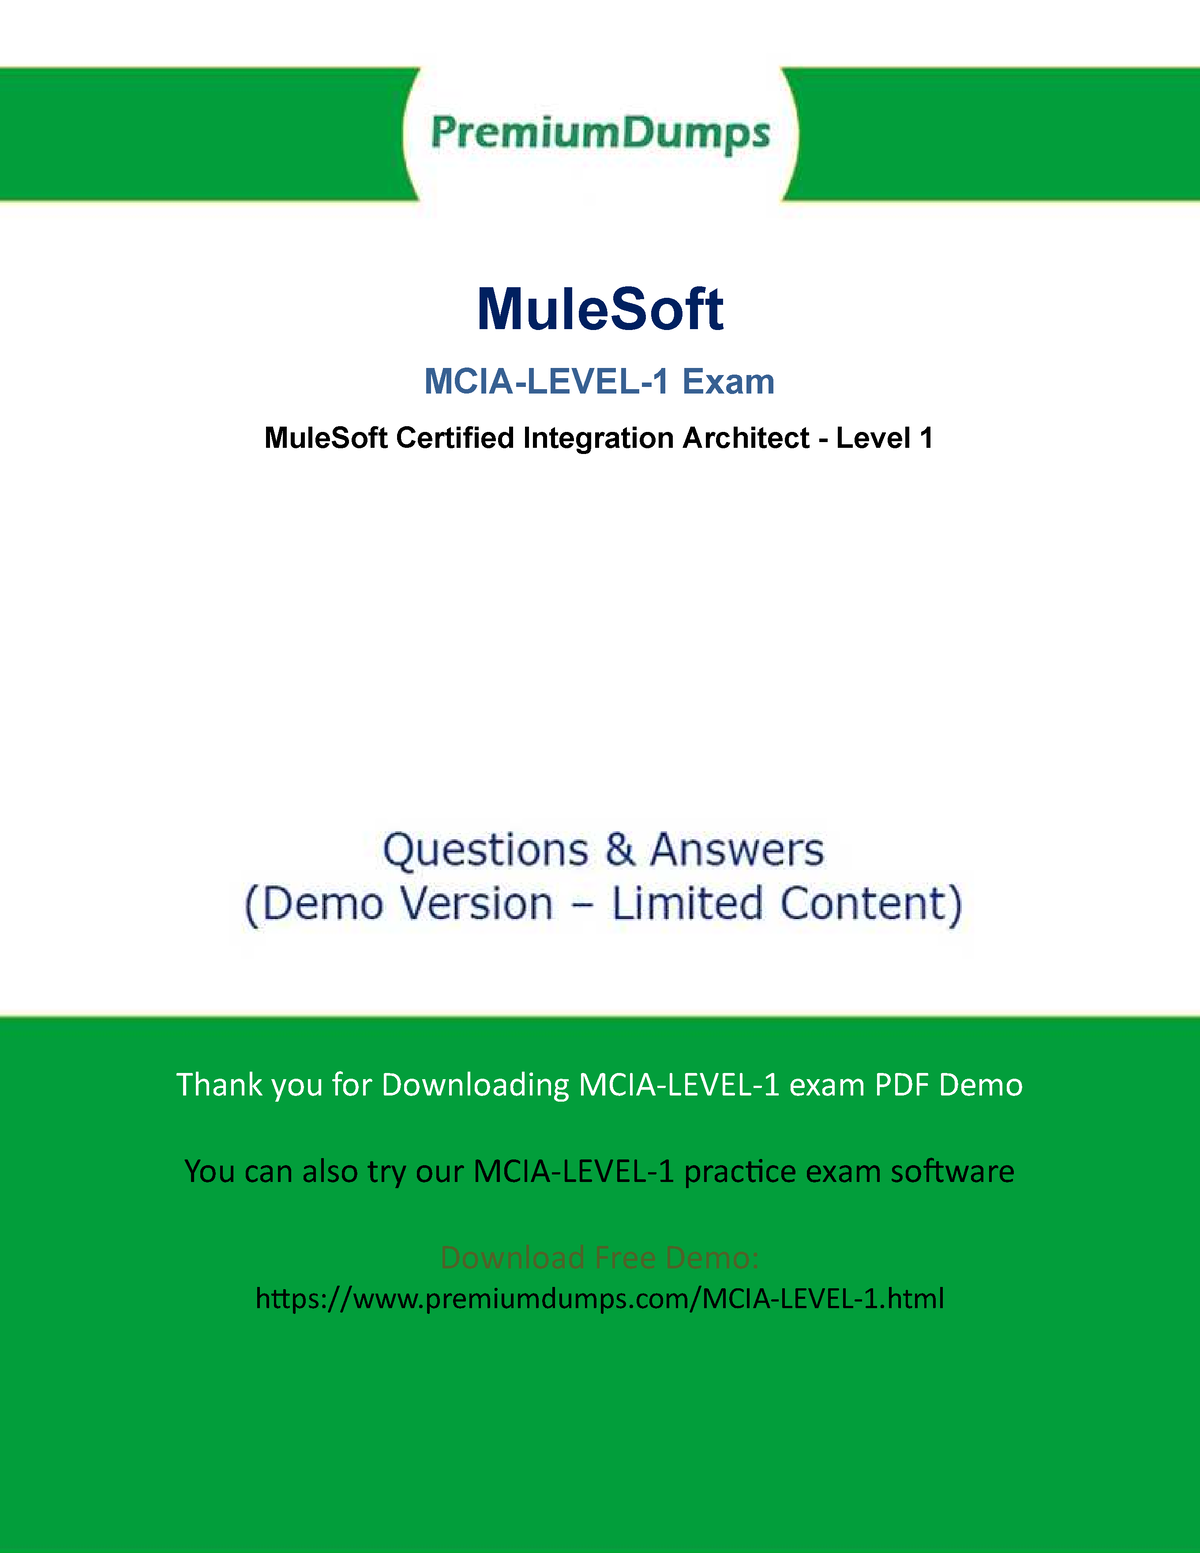 MCIA-Level-1 Musterprüfungsfragen